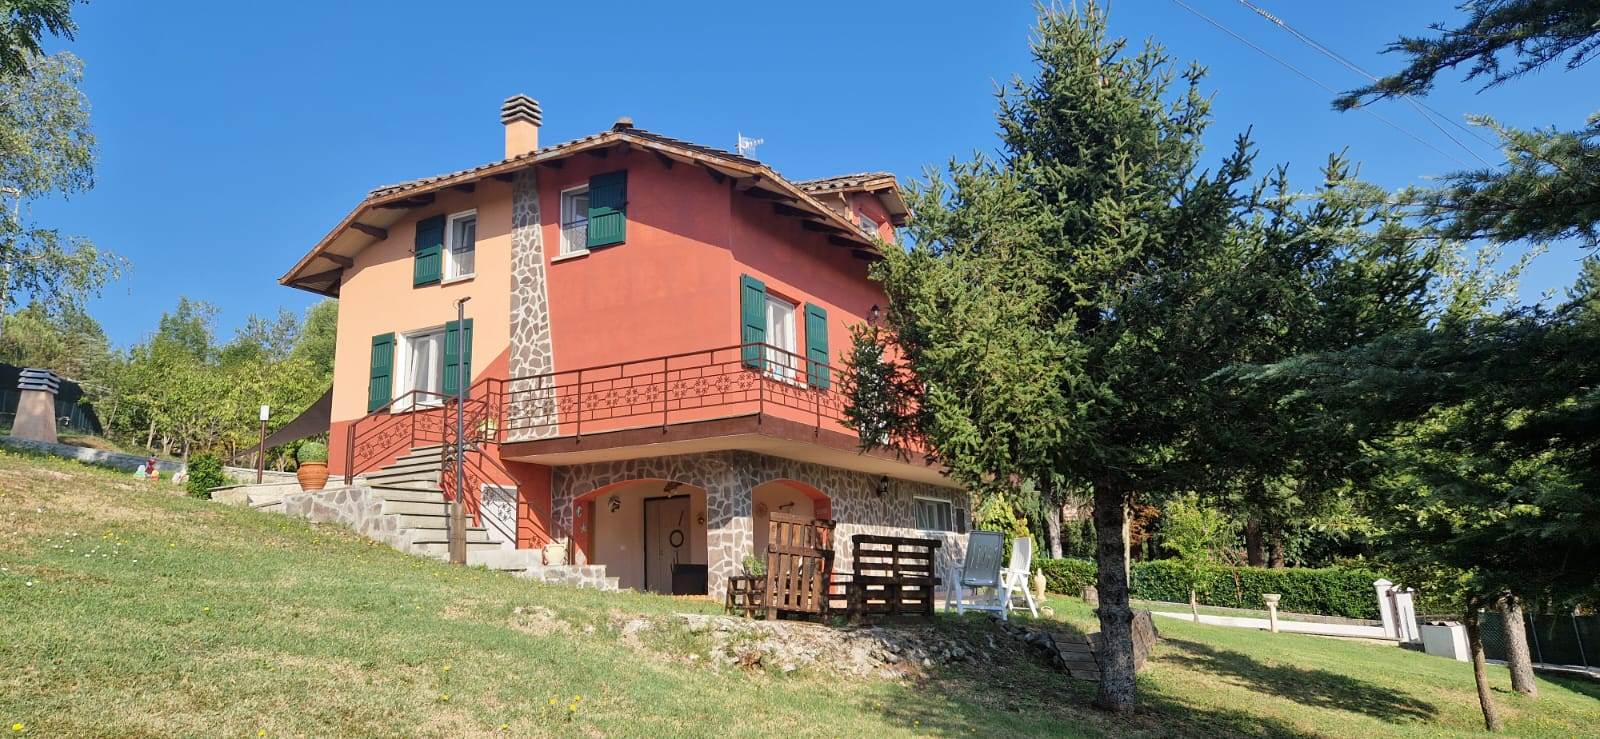 Villa ristrutturata in zona Marano a Gaggio Montano